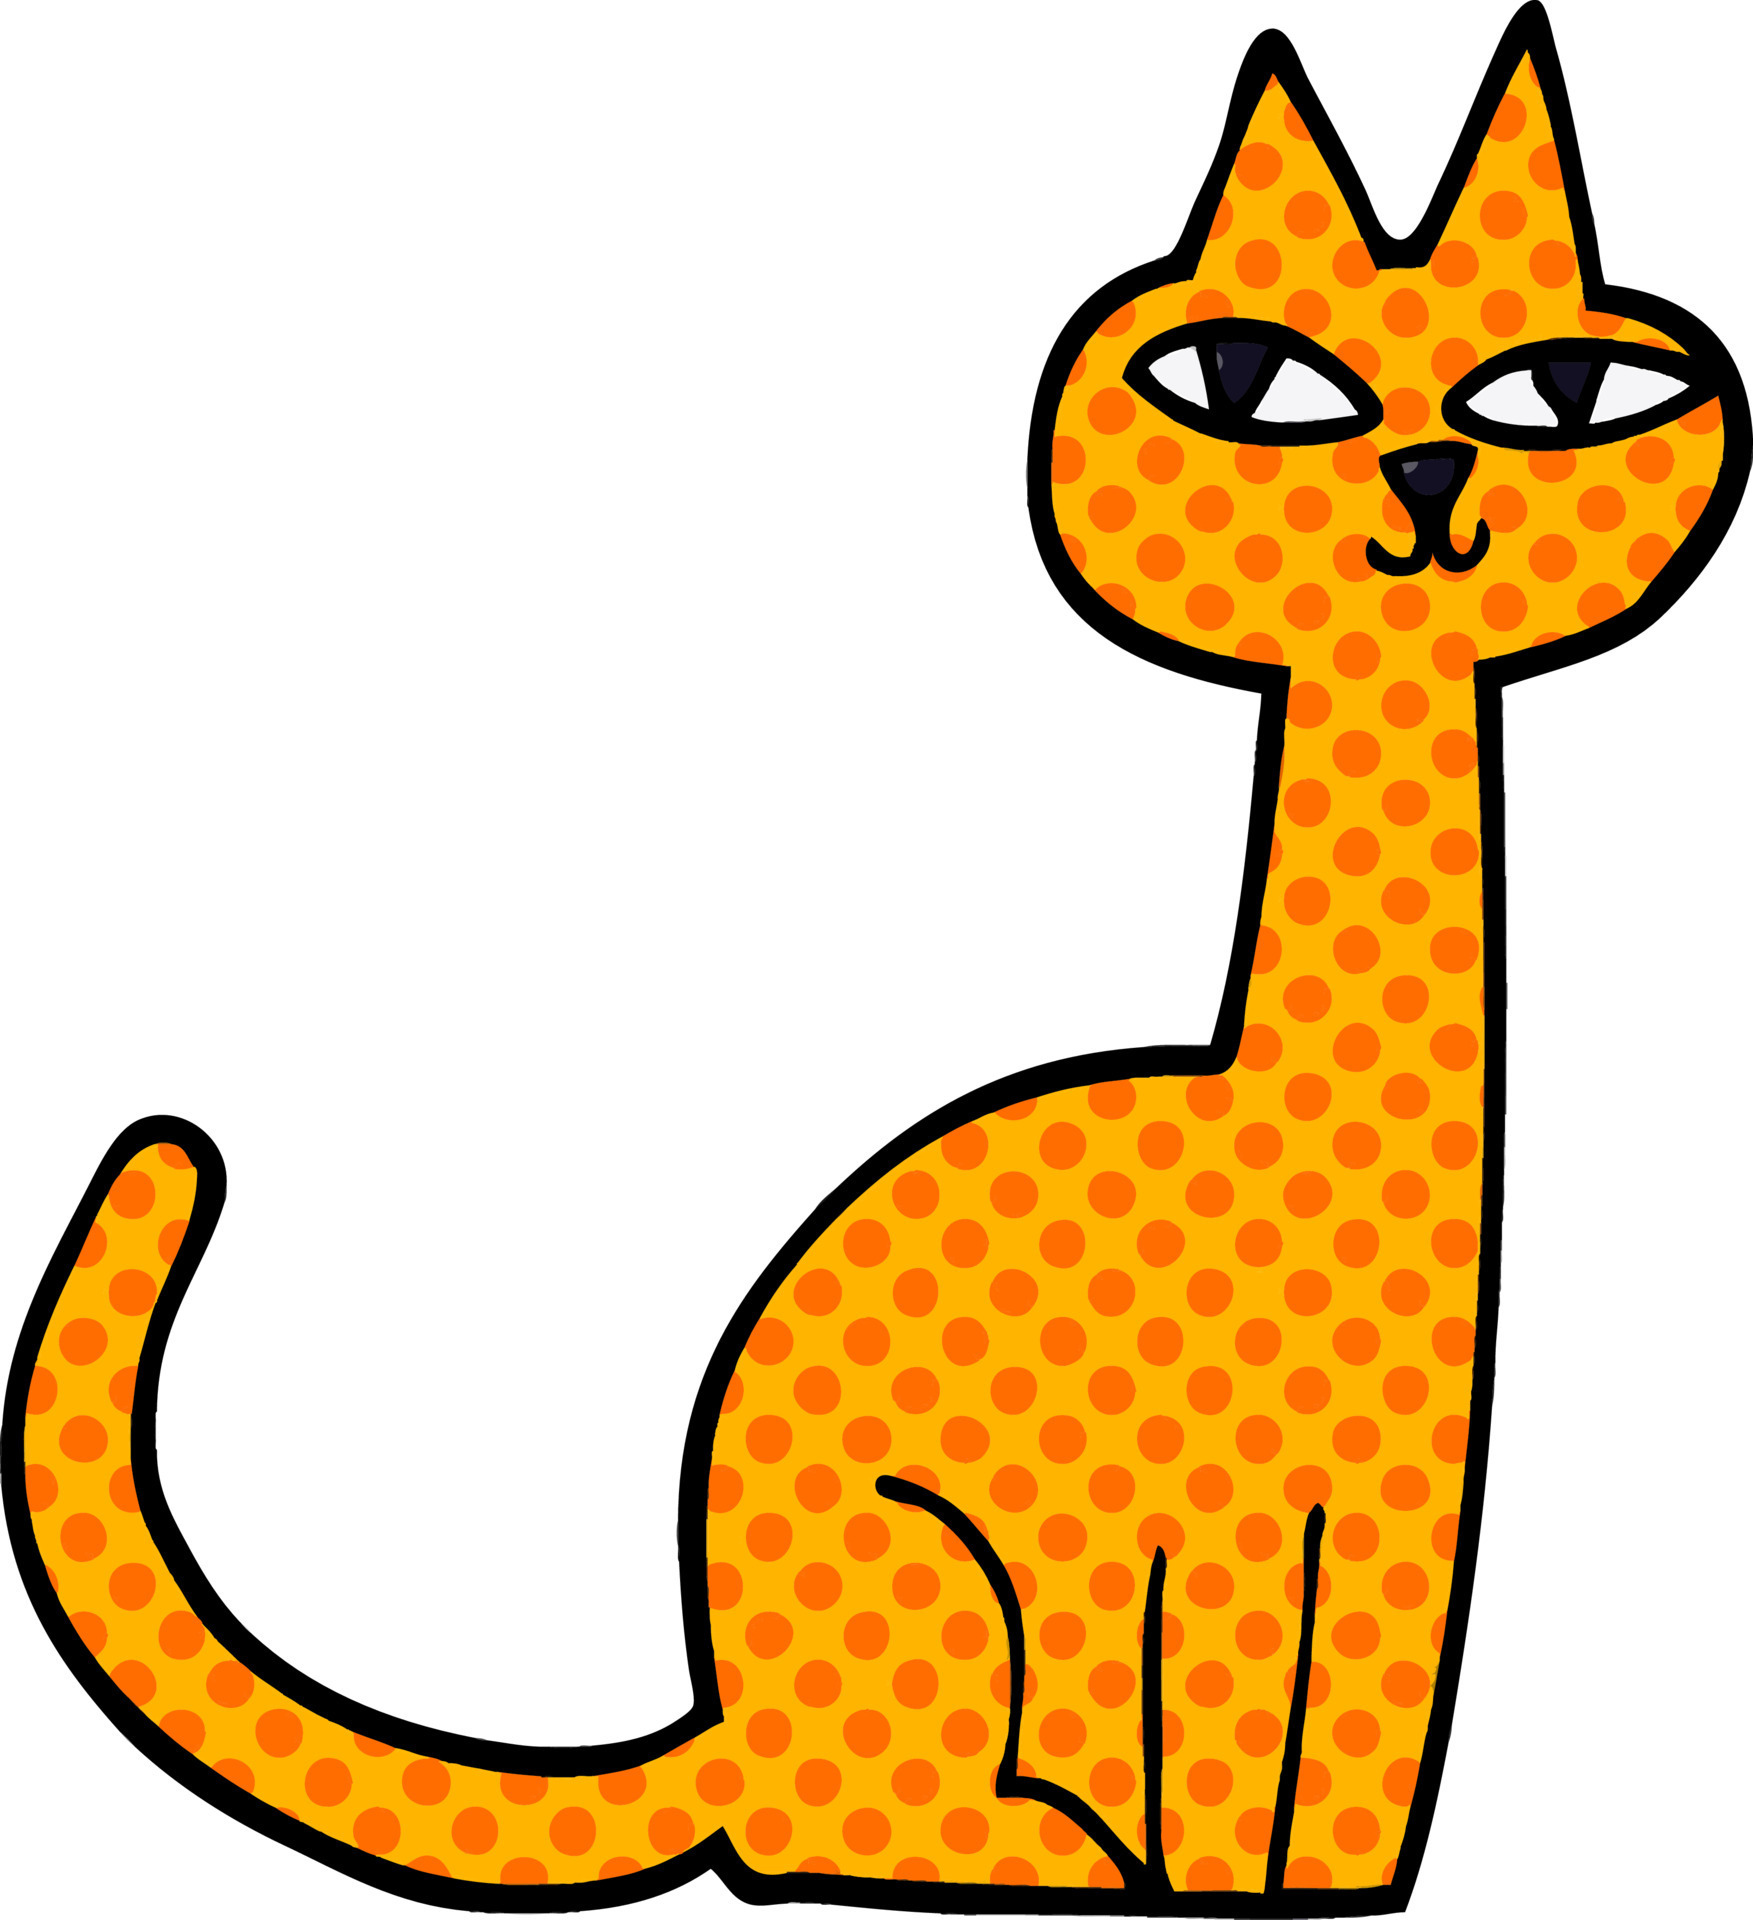 gato com flor. mão desenhar ilustração vetorial de gatinho. desenho linear  de bichinho fofo com planta na cabeça. ícone de contorno do gato engraçado.  17655050 Vetor no Vecteezy